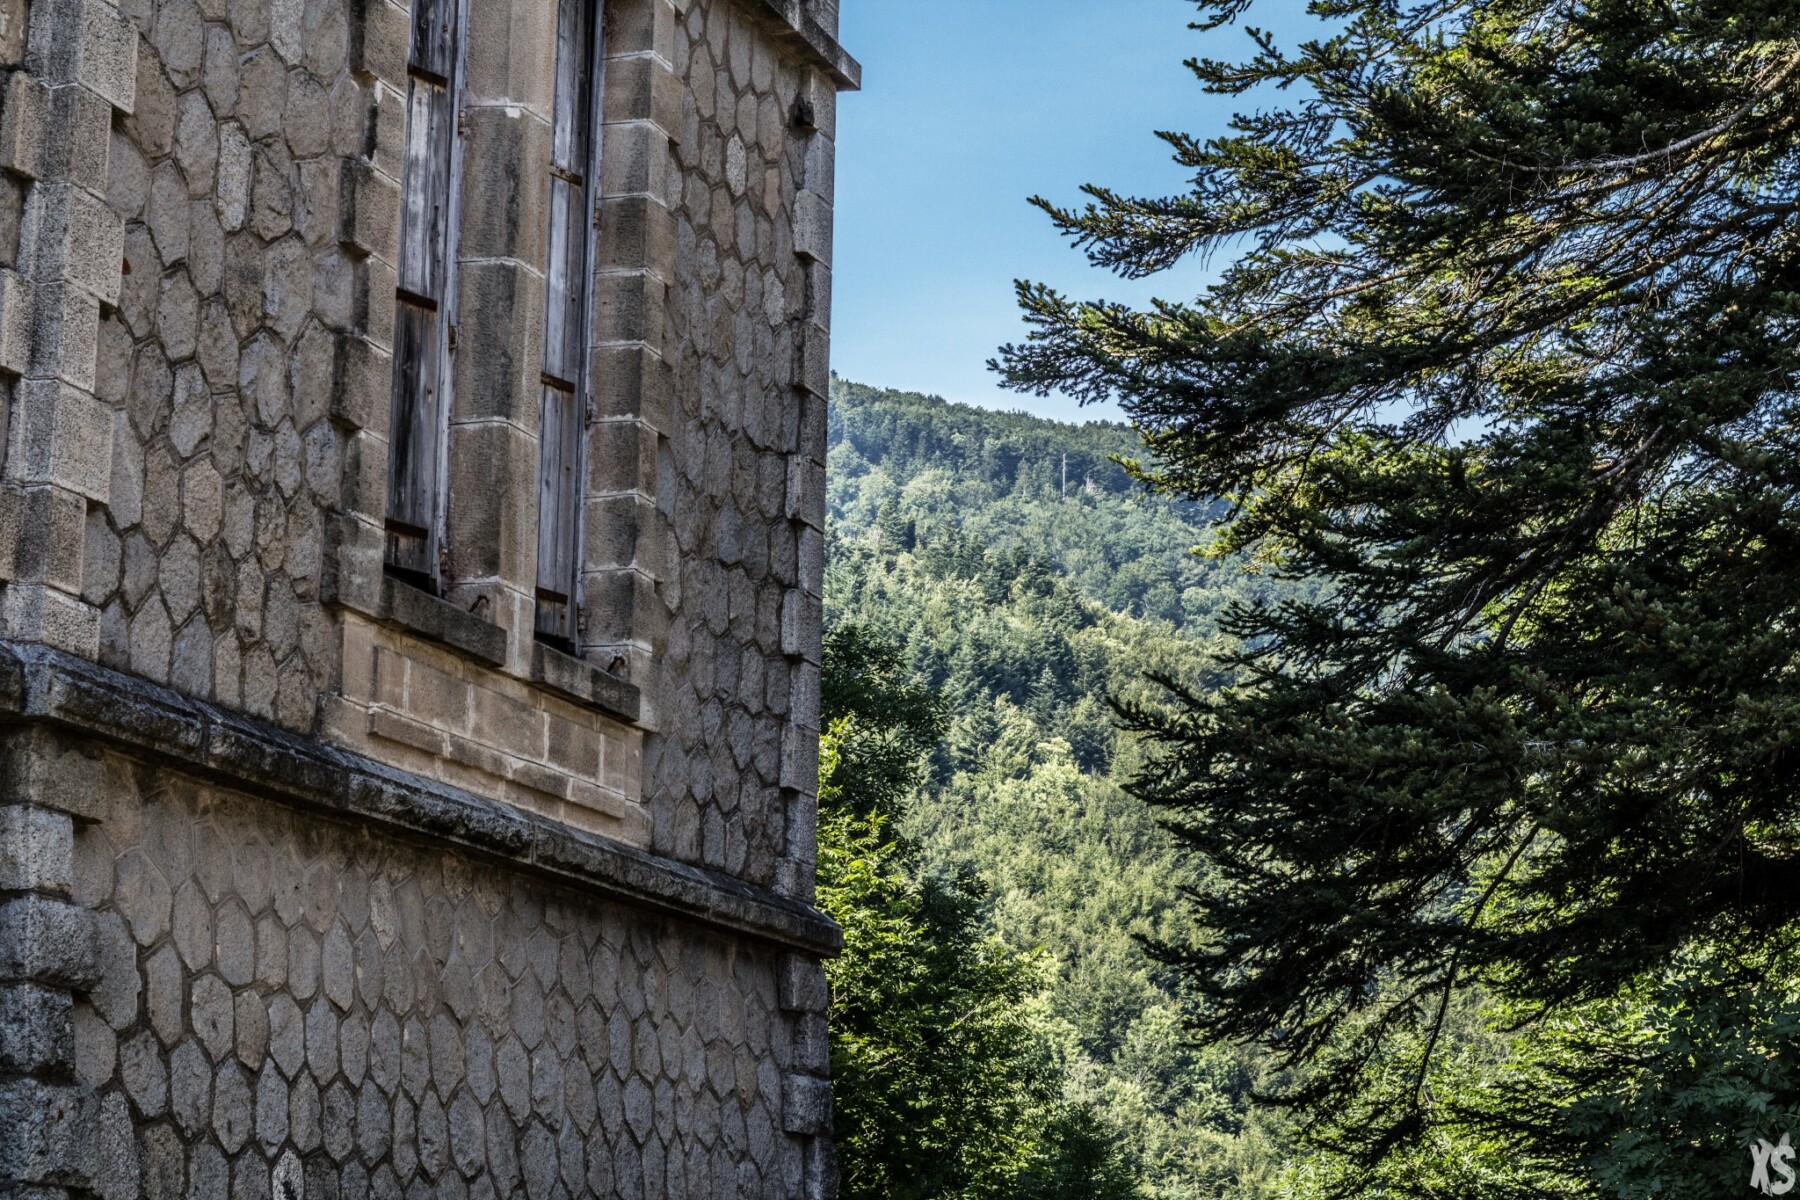 Sanatorium abandonné en Languedoc-Roussillon